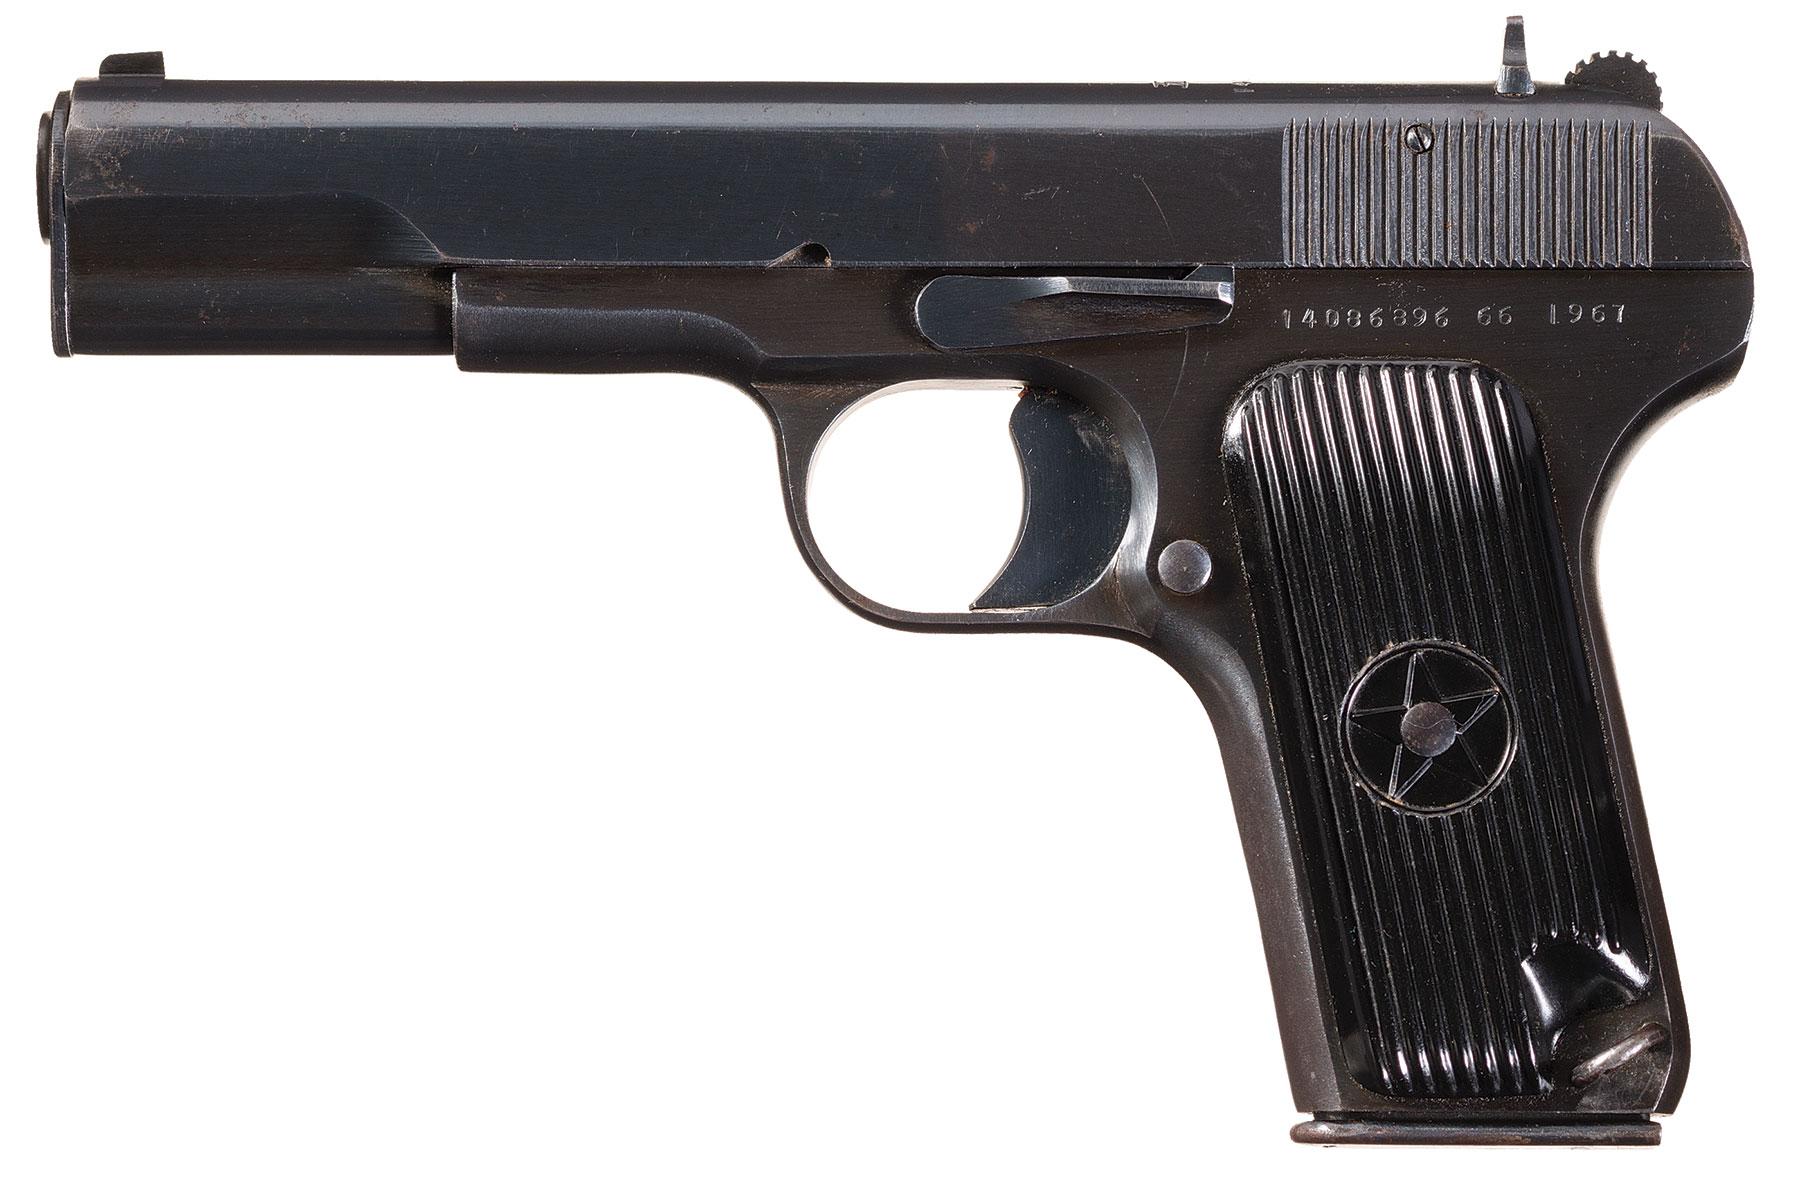 black star pistol